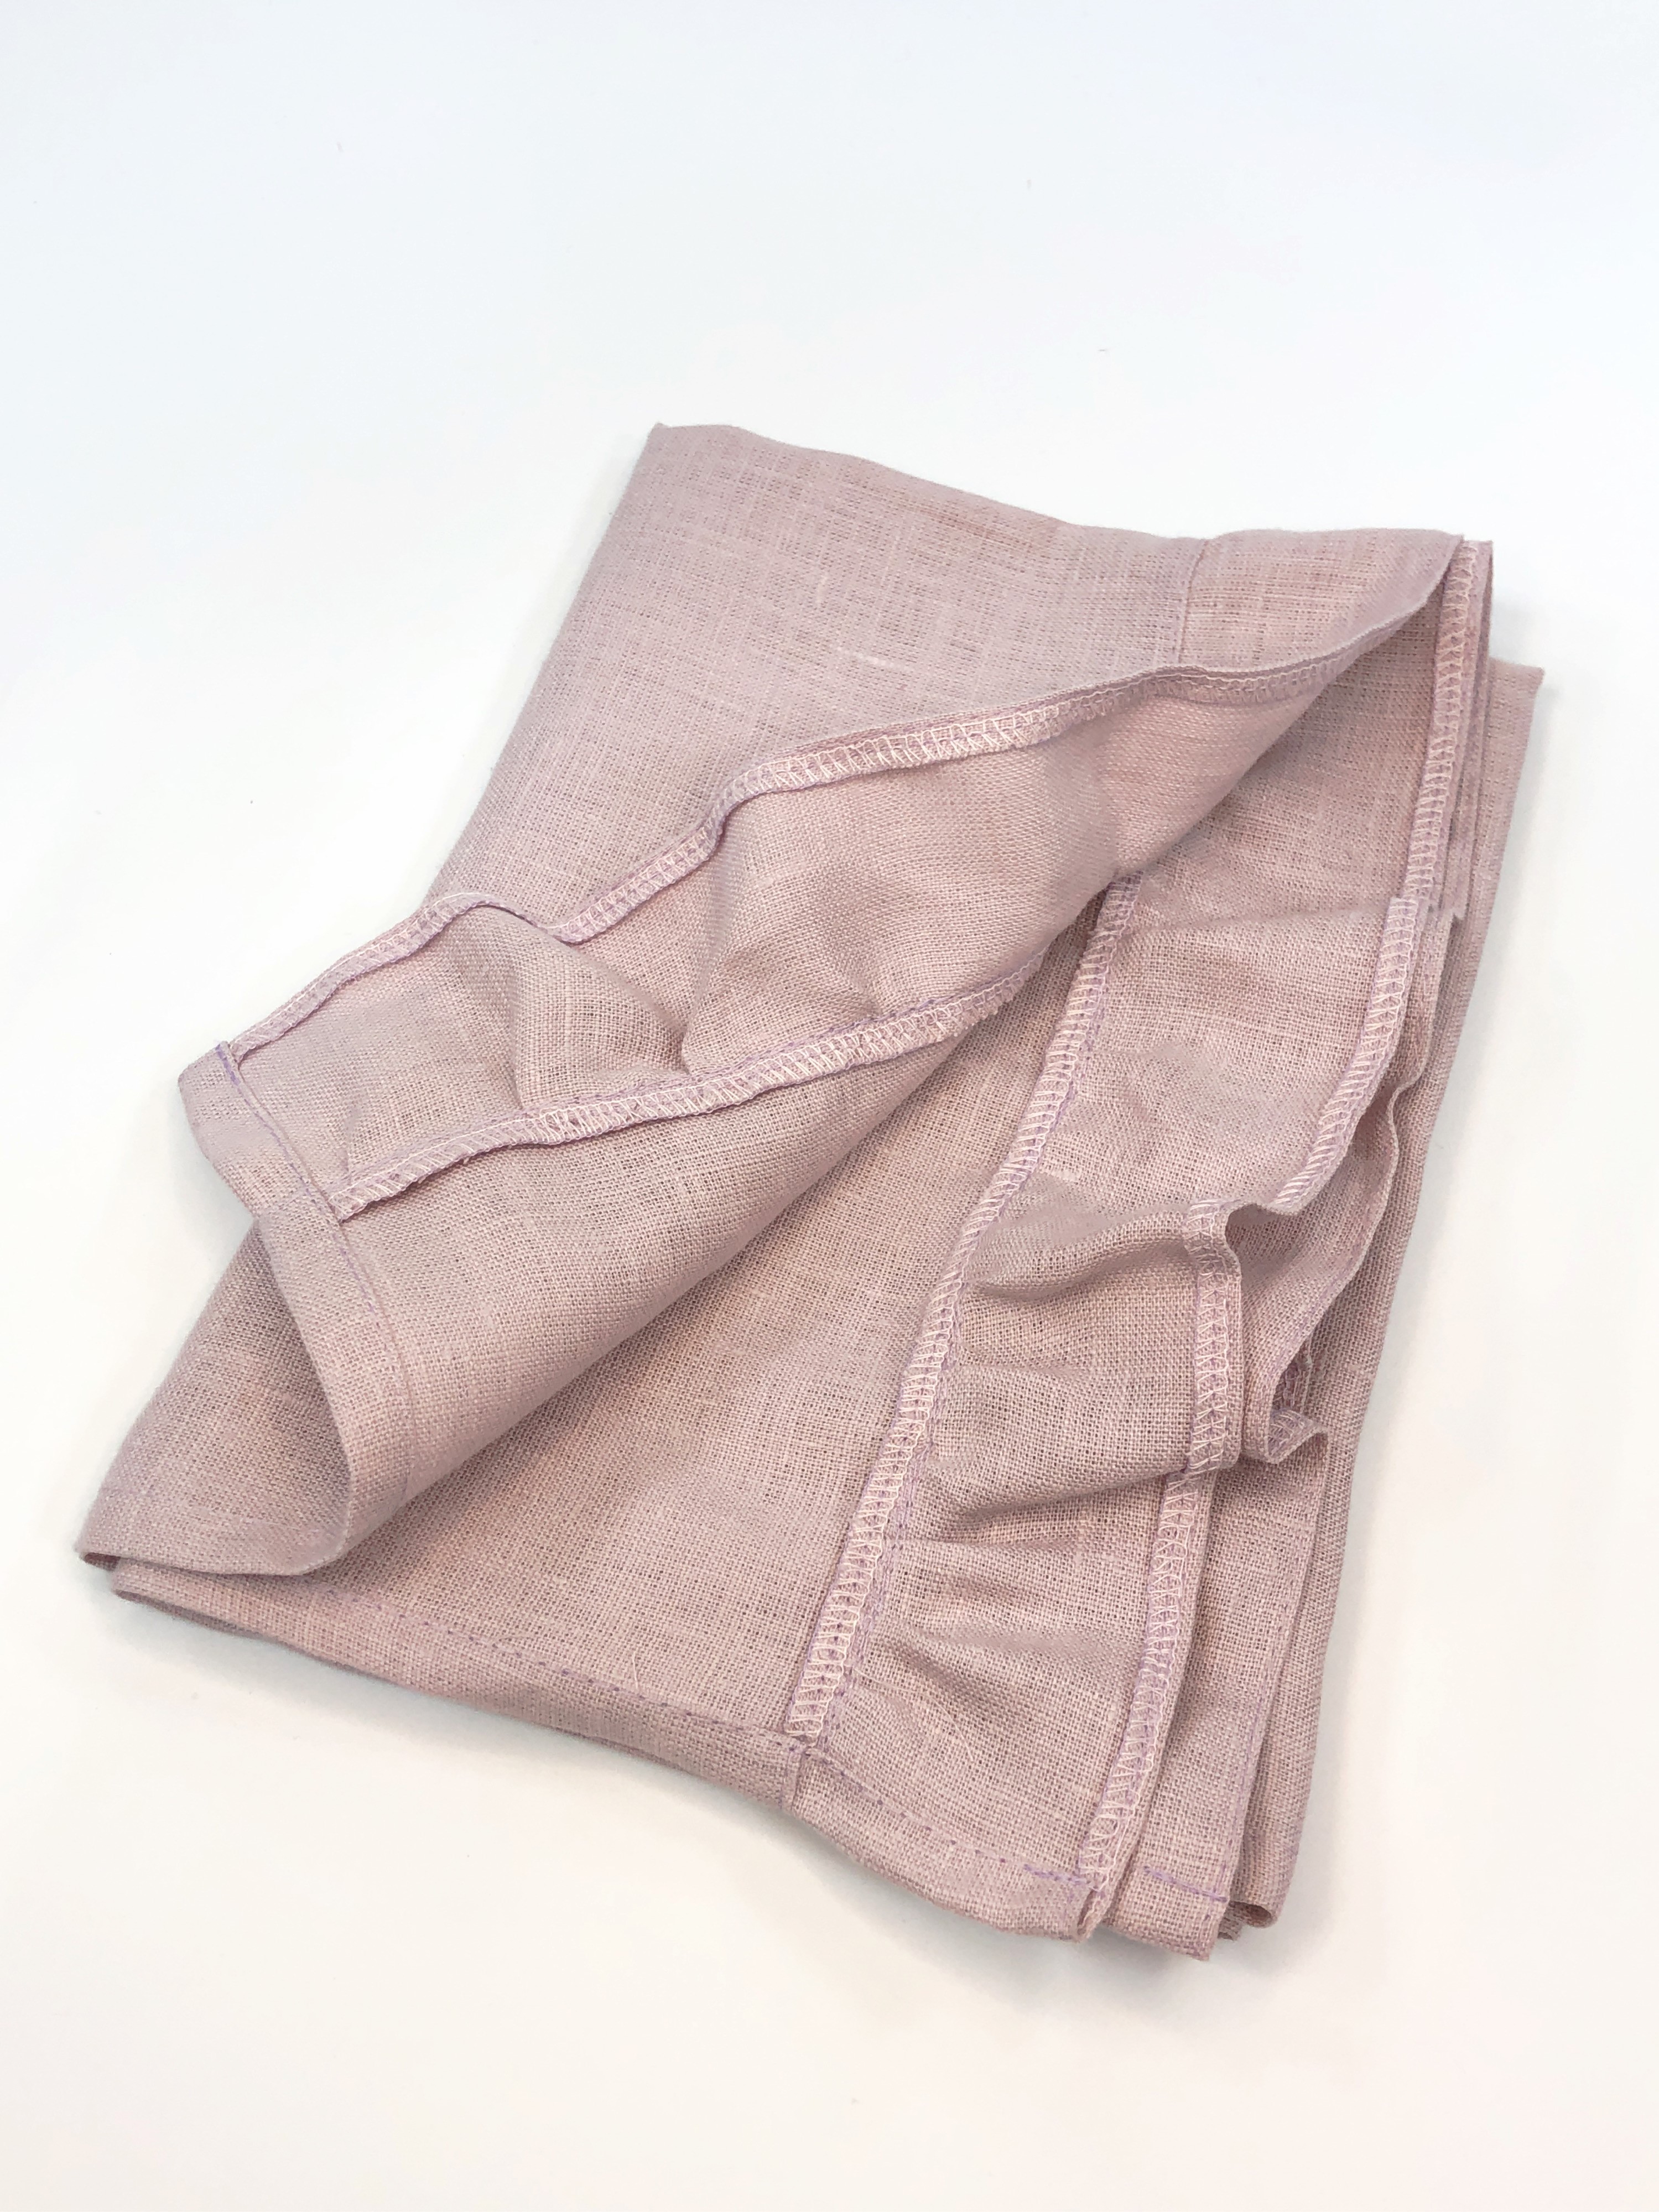 Полотенце льняное с рюшами 50х70см розового цвета 2шт фото 3